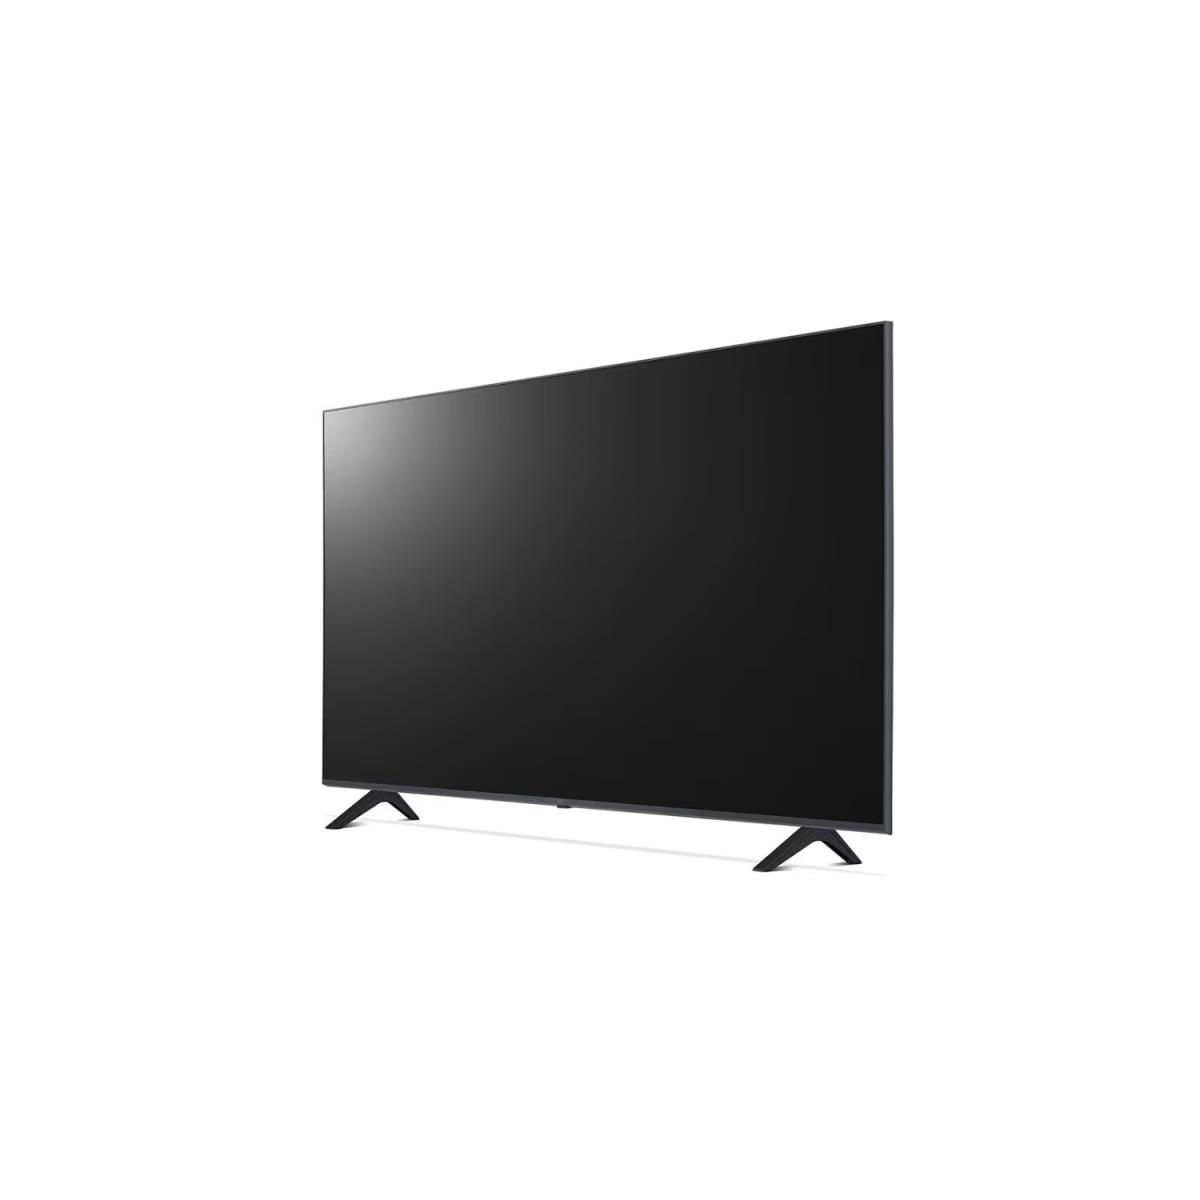 TV LG LED 55" SMART AI THINQ 4K